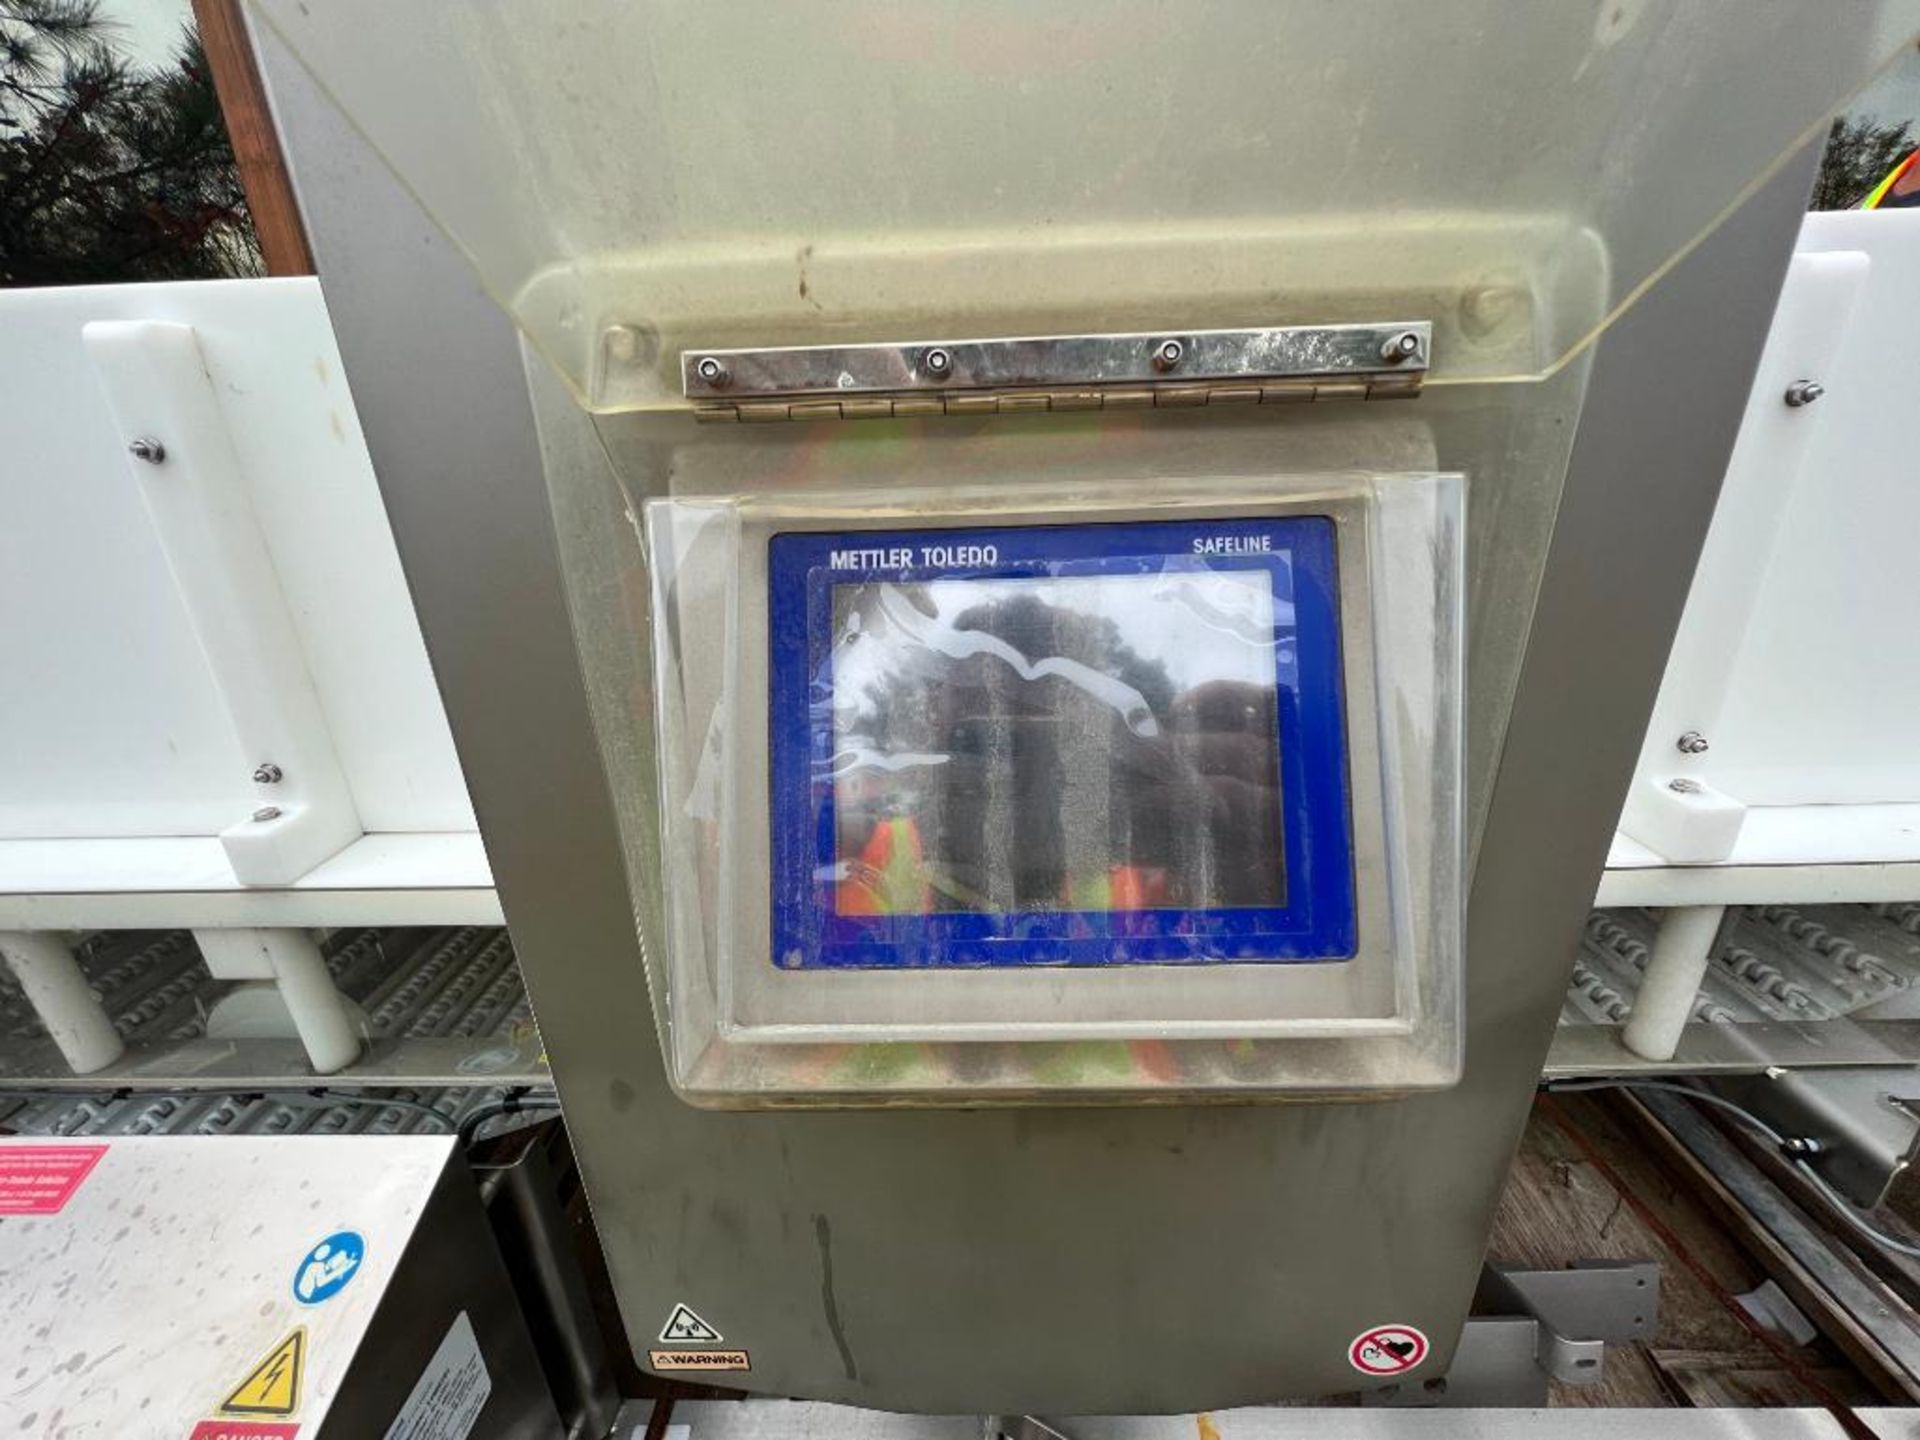 2018 Safeline metal detector, model: SL2000 - Image 6 of 24